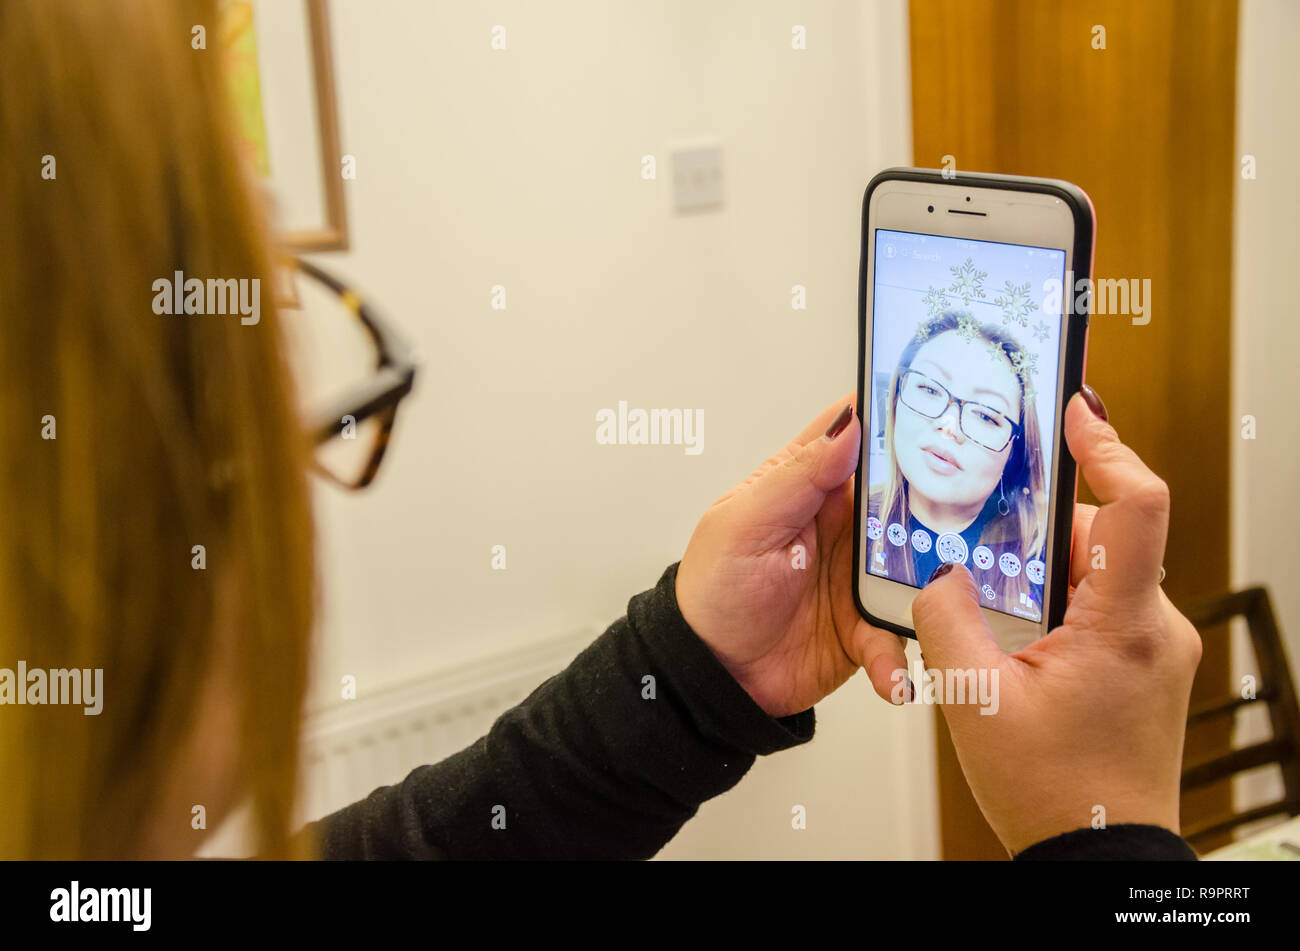 Una signora prende un selfie utilizzando Snapchat su un iPhone che migliora l'immagine con effetti Foto Stock